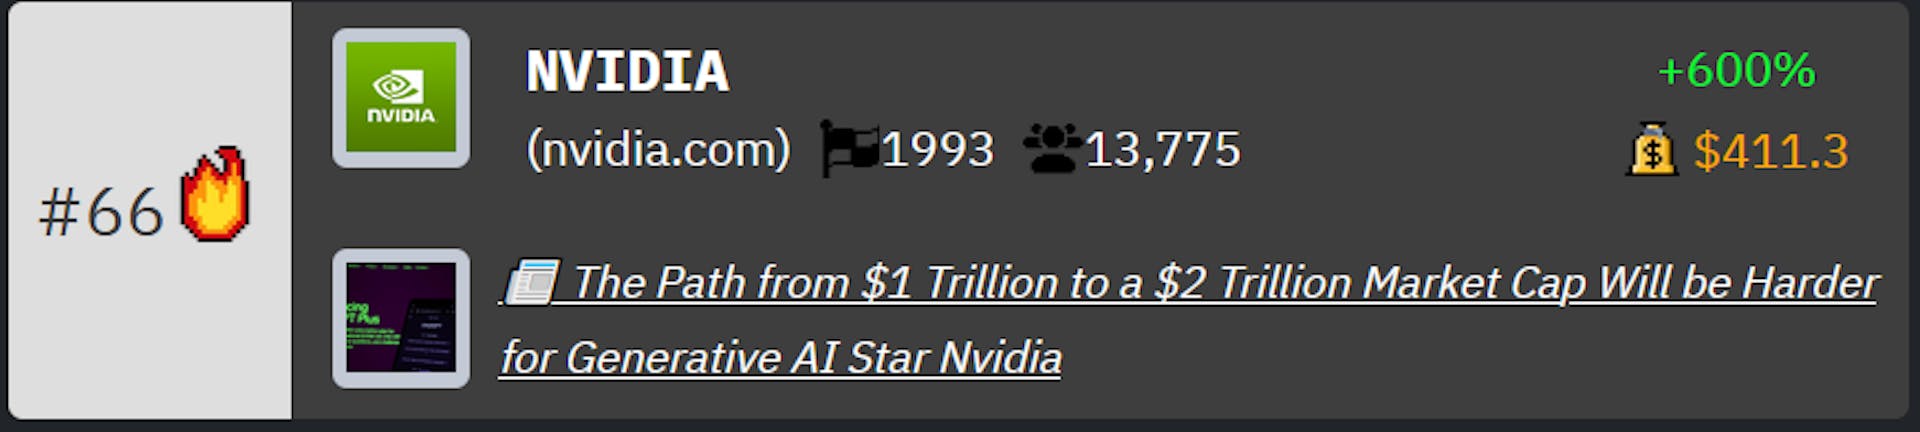 Xếp hạng của Nvidia trên Bảng xếp hạng Công ty Công nghệ của HackerNoon